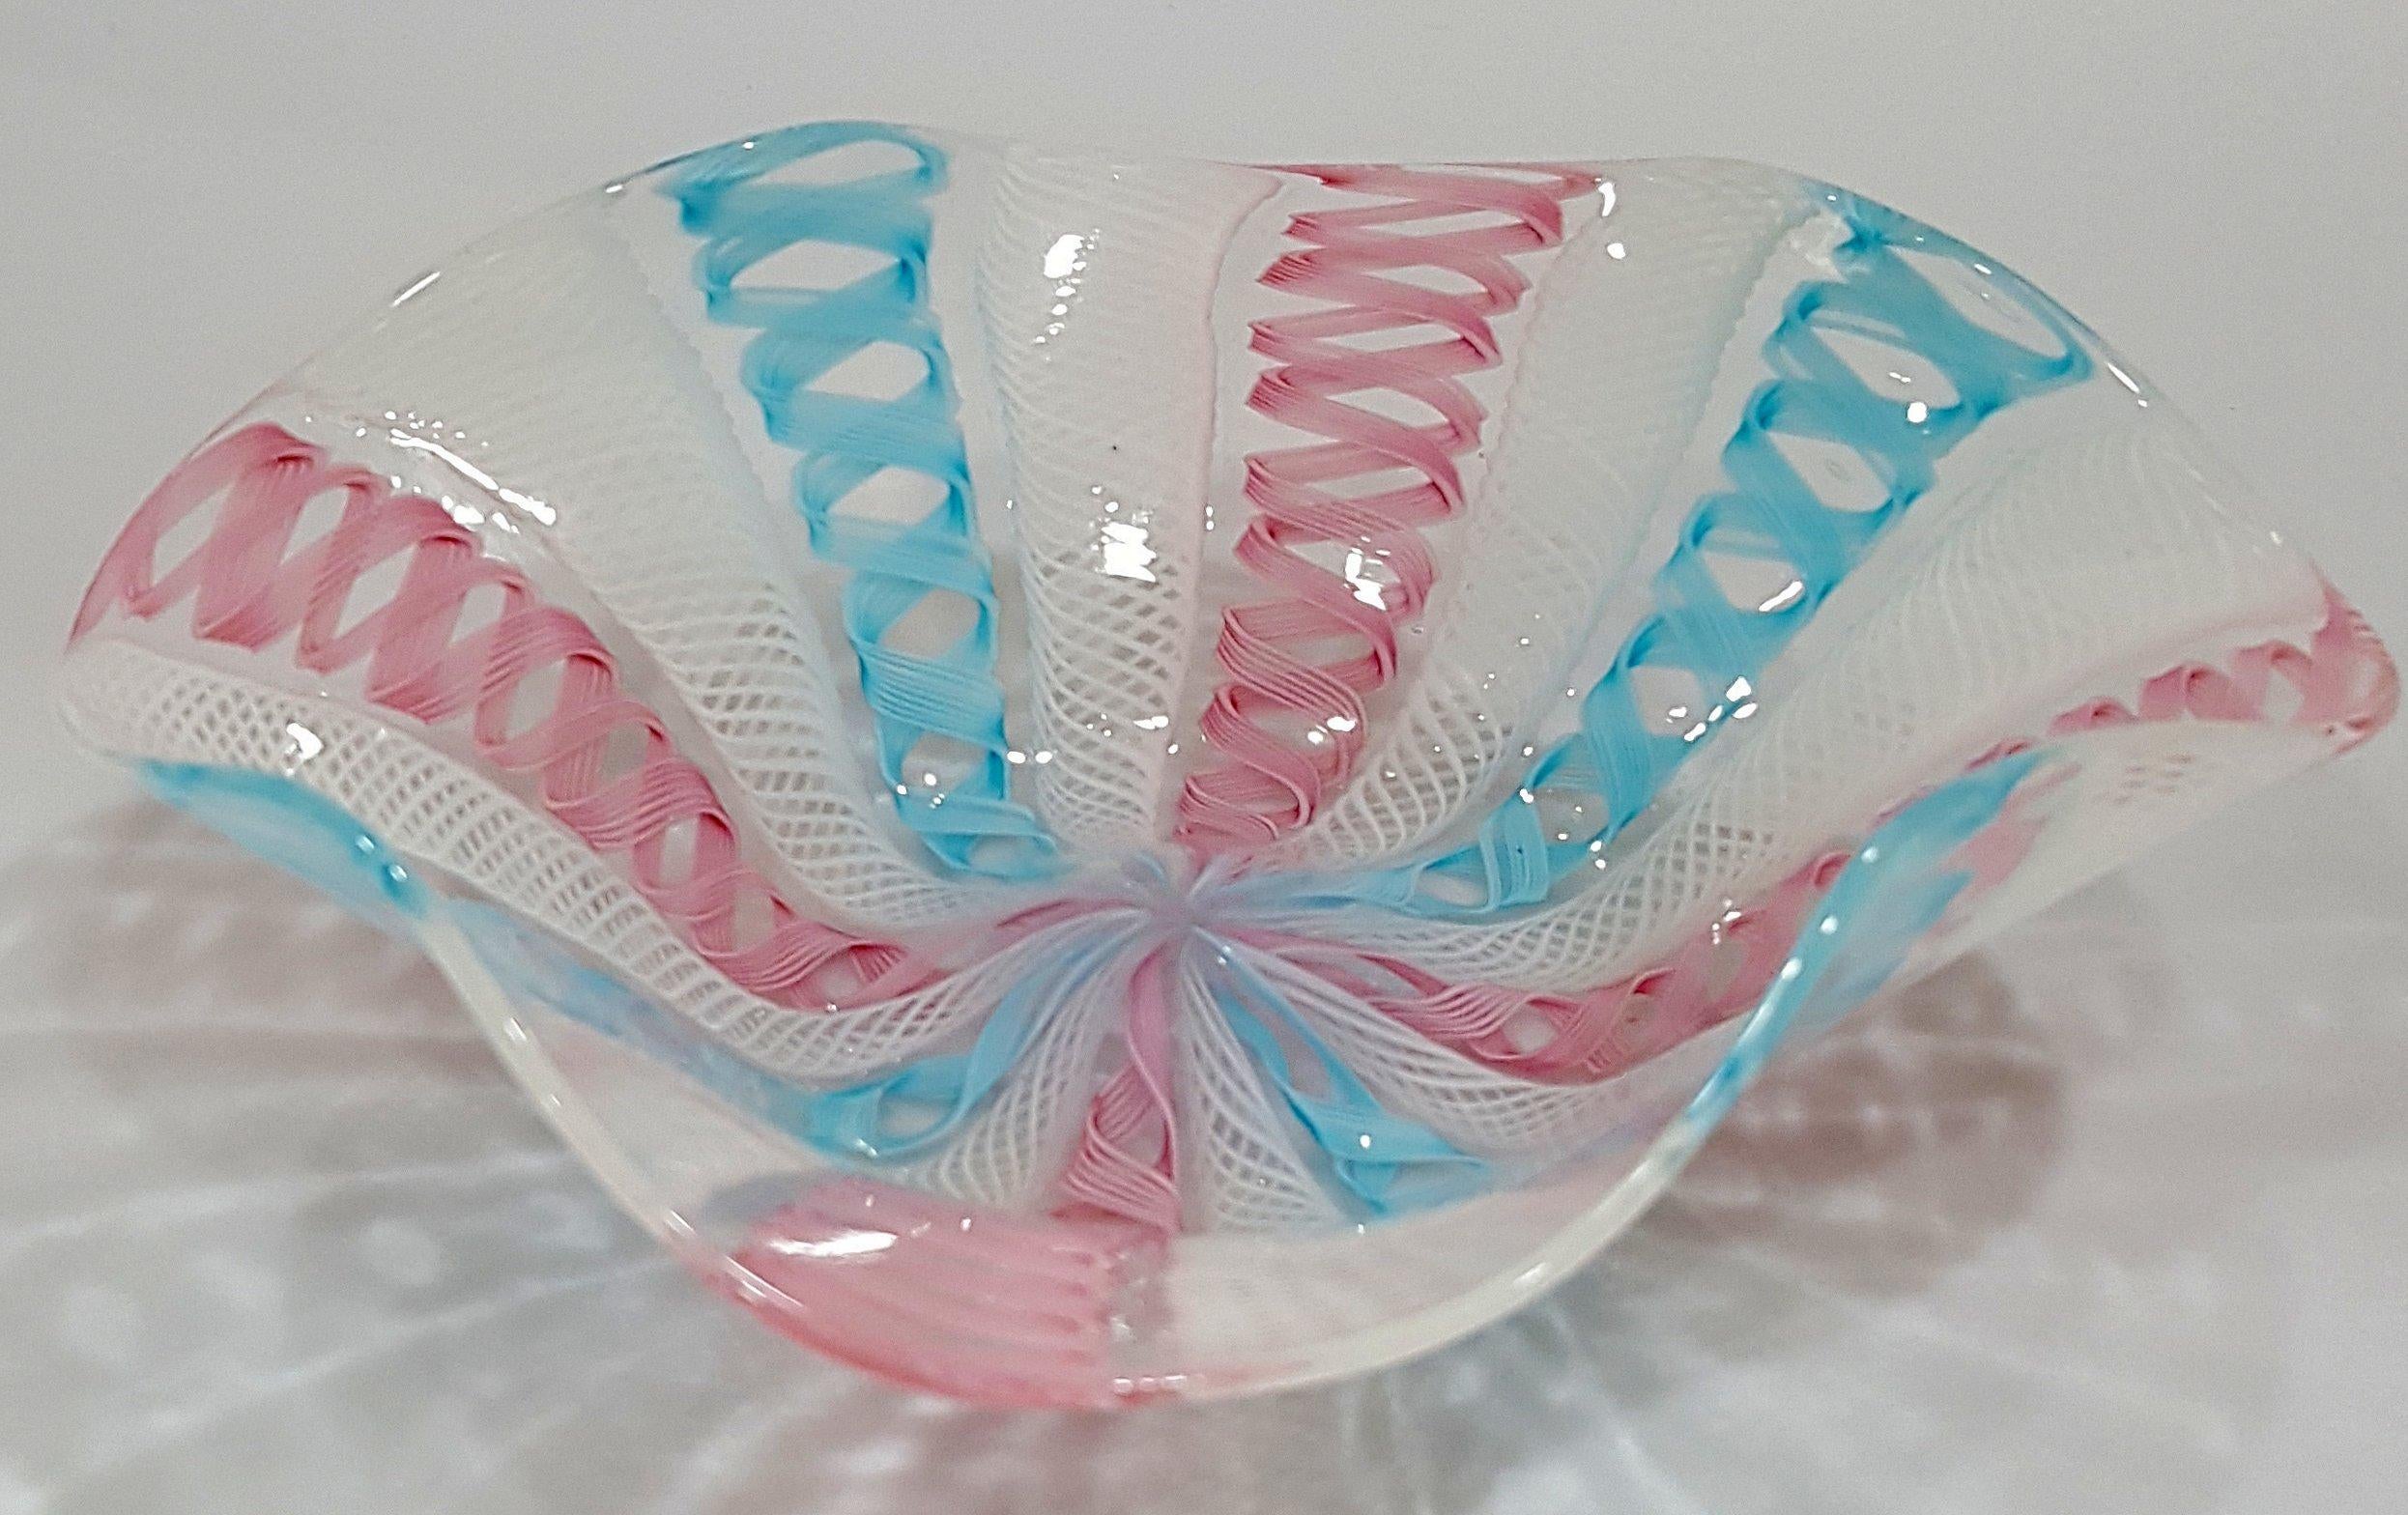 Murano Glass Zanfirico Latticino ribbon glass bowl, Salviati suspected. About 5.5